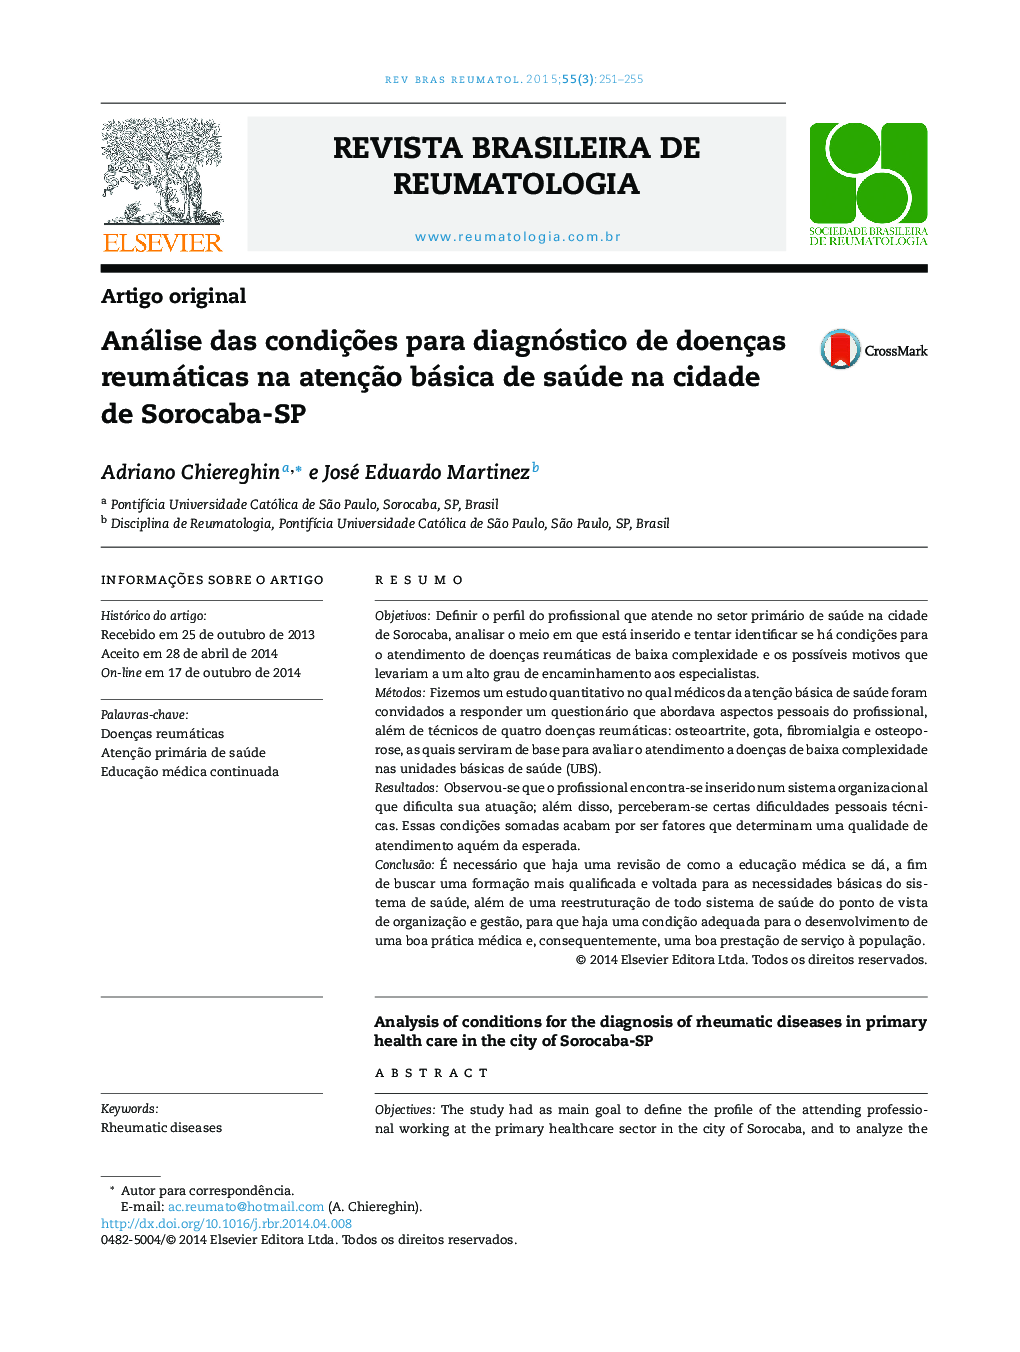 Análise das condições para diagnóstico de doenças reumáticas na atenção básica de saúde na cidade de Sorocaba‐SP